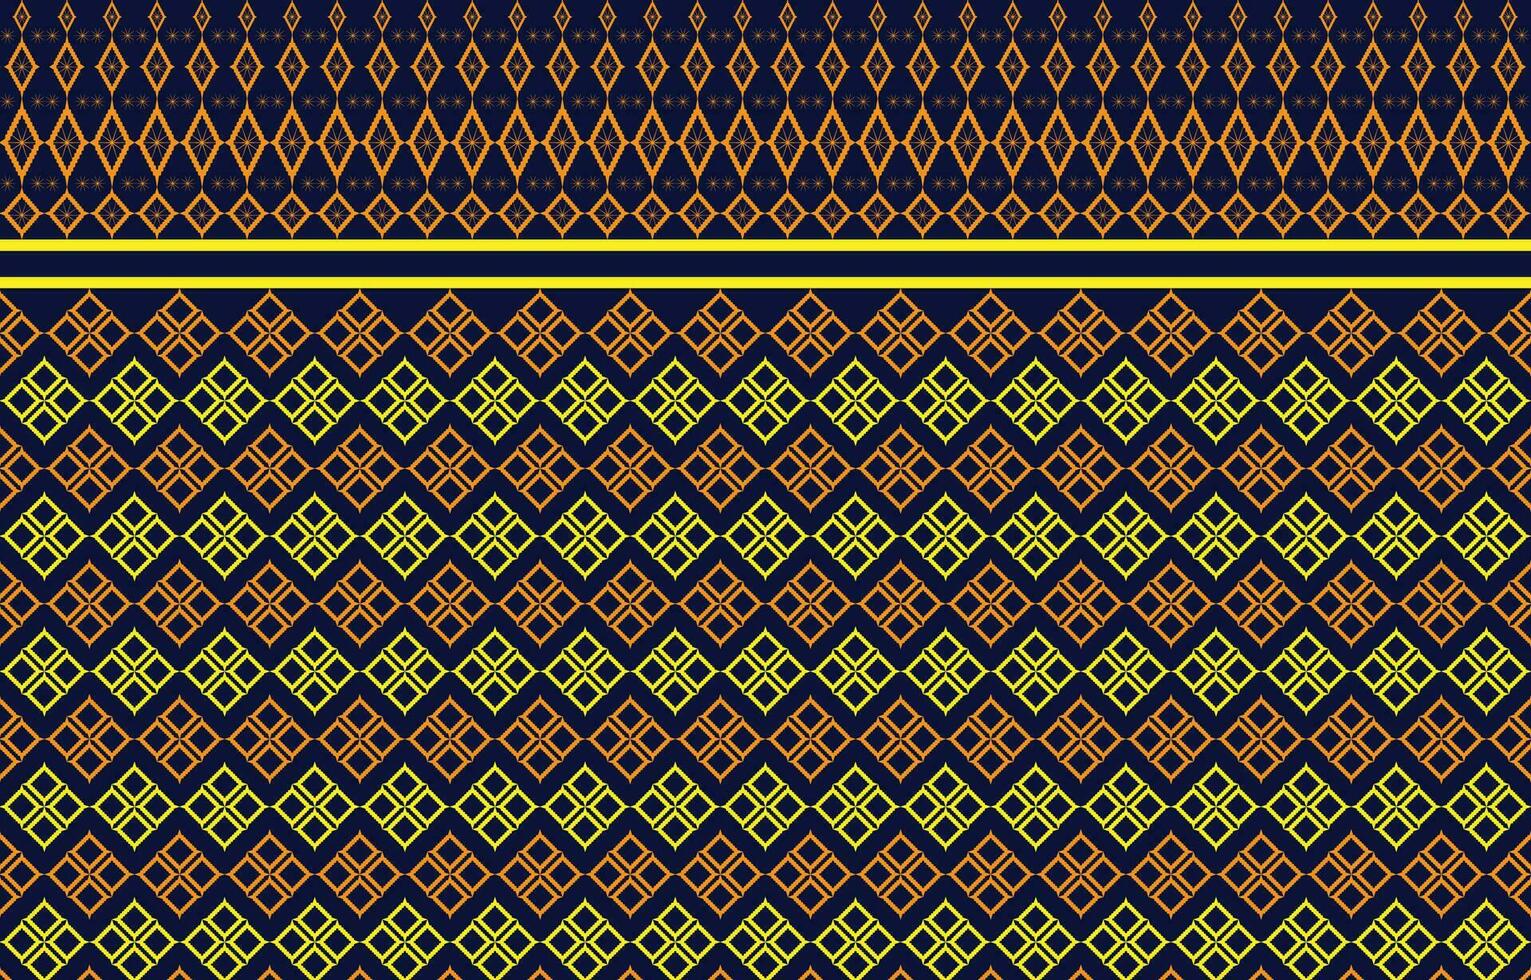 bellissimo tailandese a maglia ricamo.geometrico etnico orientale modello tradizionale sfondo. vettore